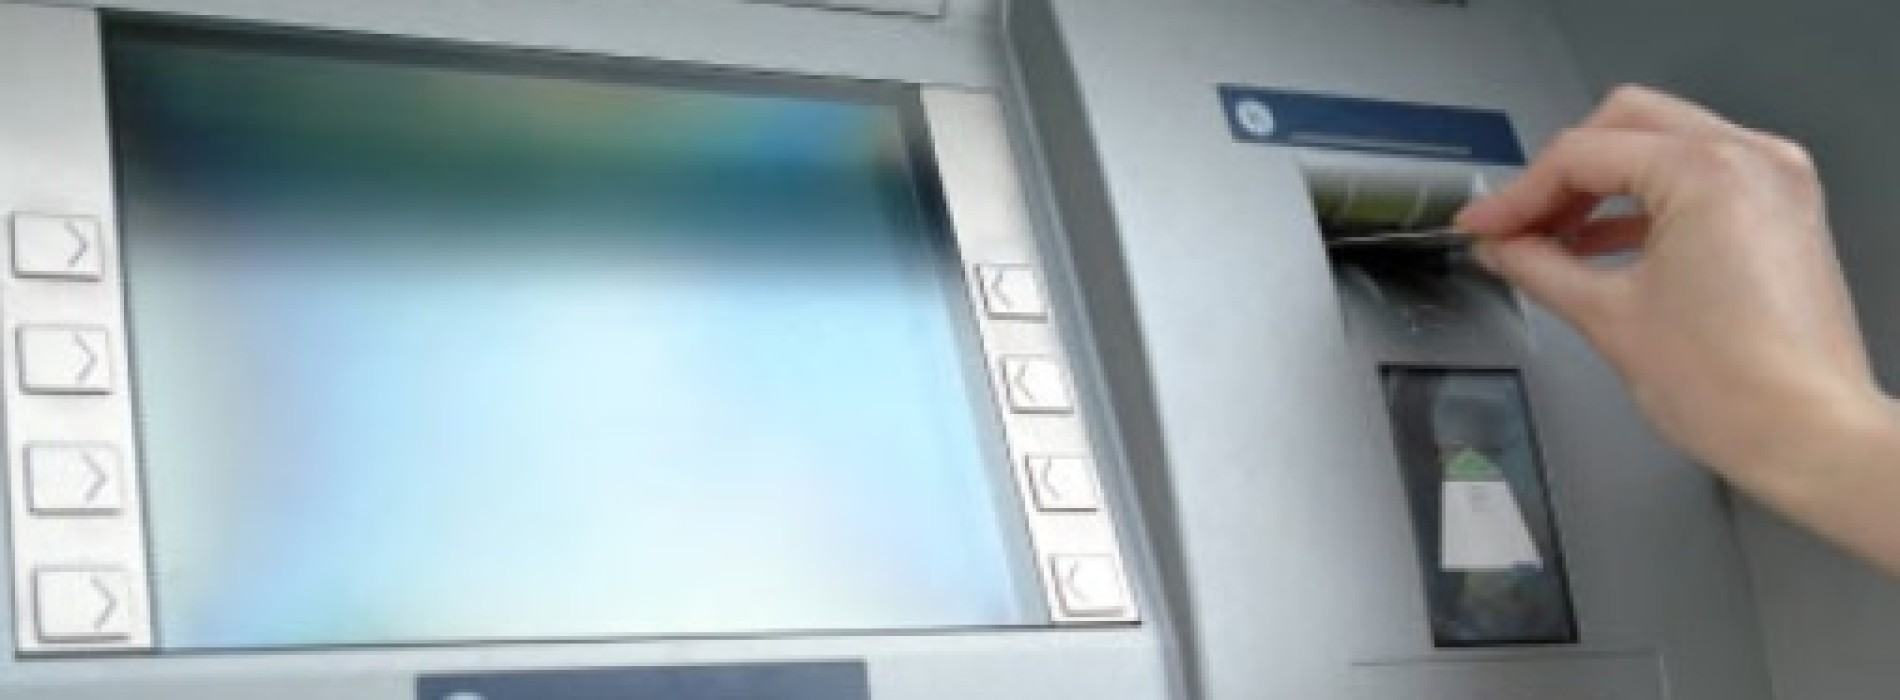 Darmowe bankomaty w całym kraju i gwarancja niezmienności ceny przez dwa lata